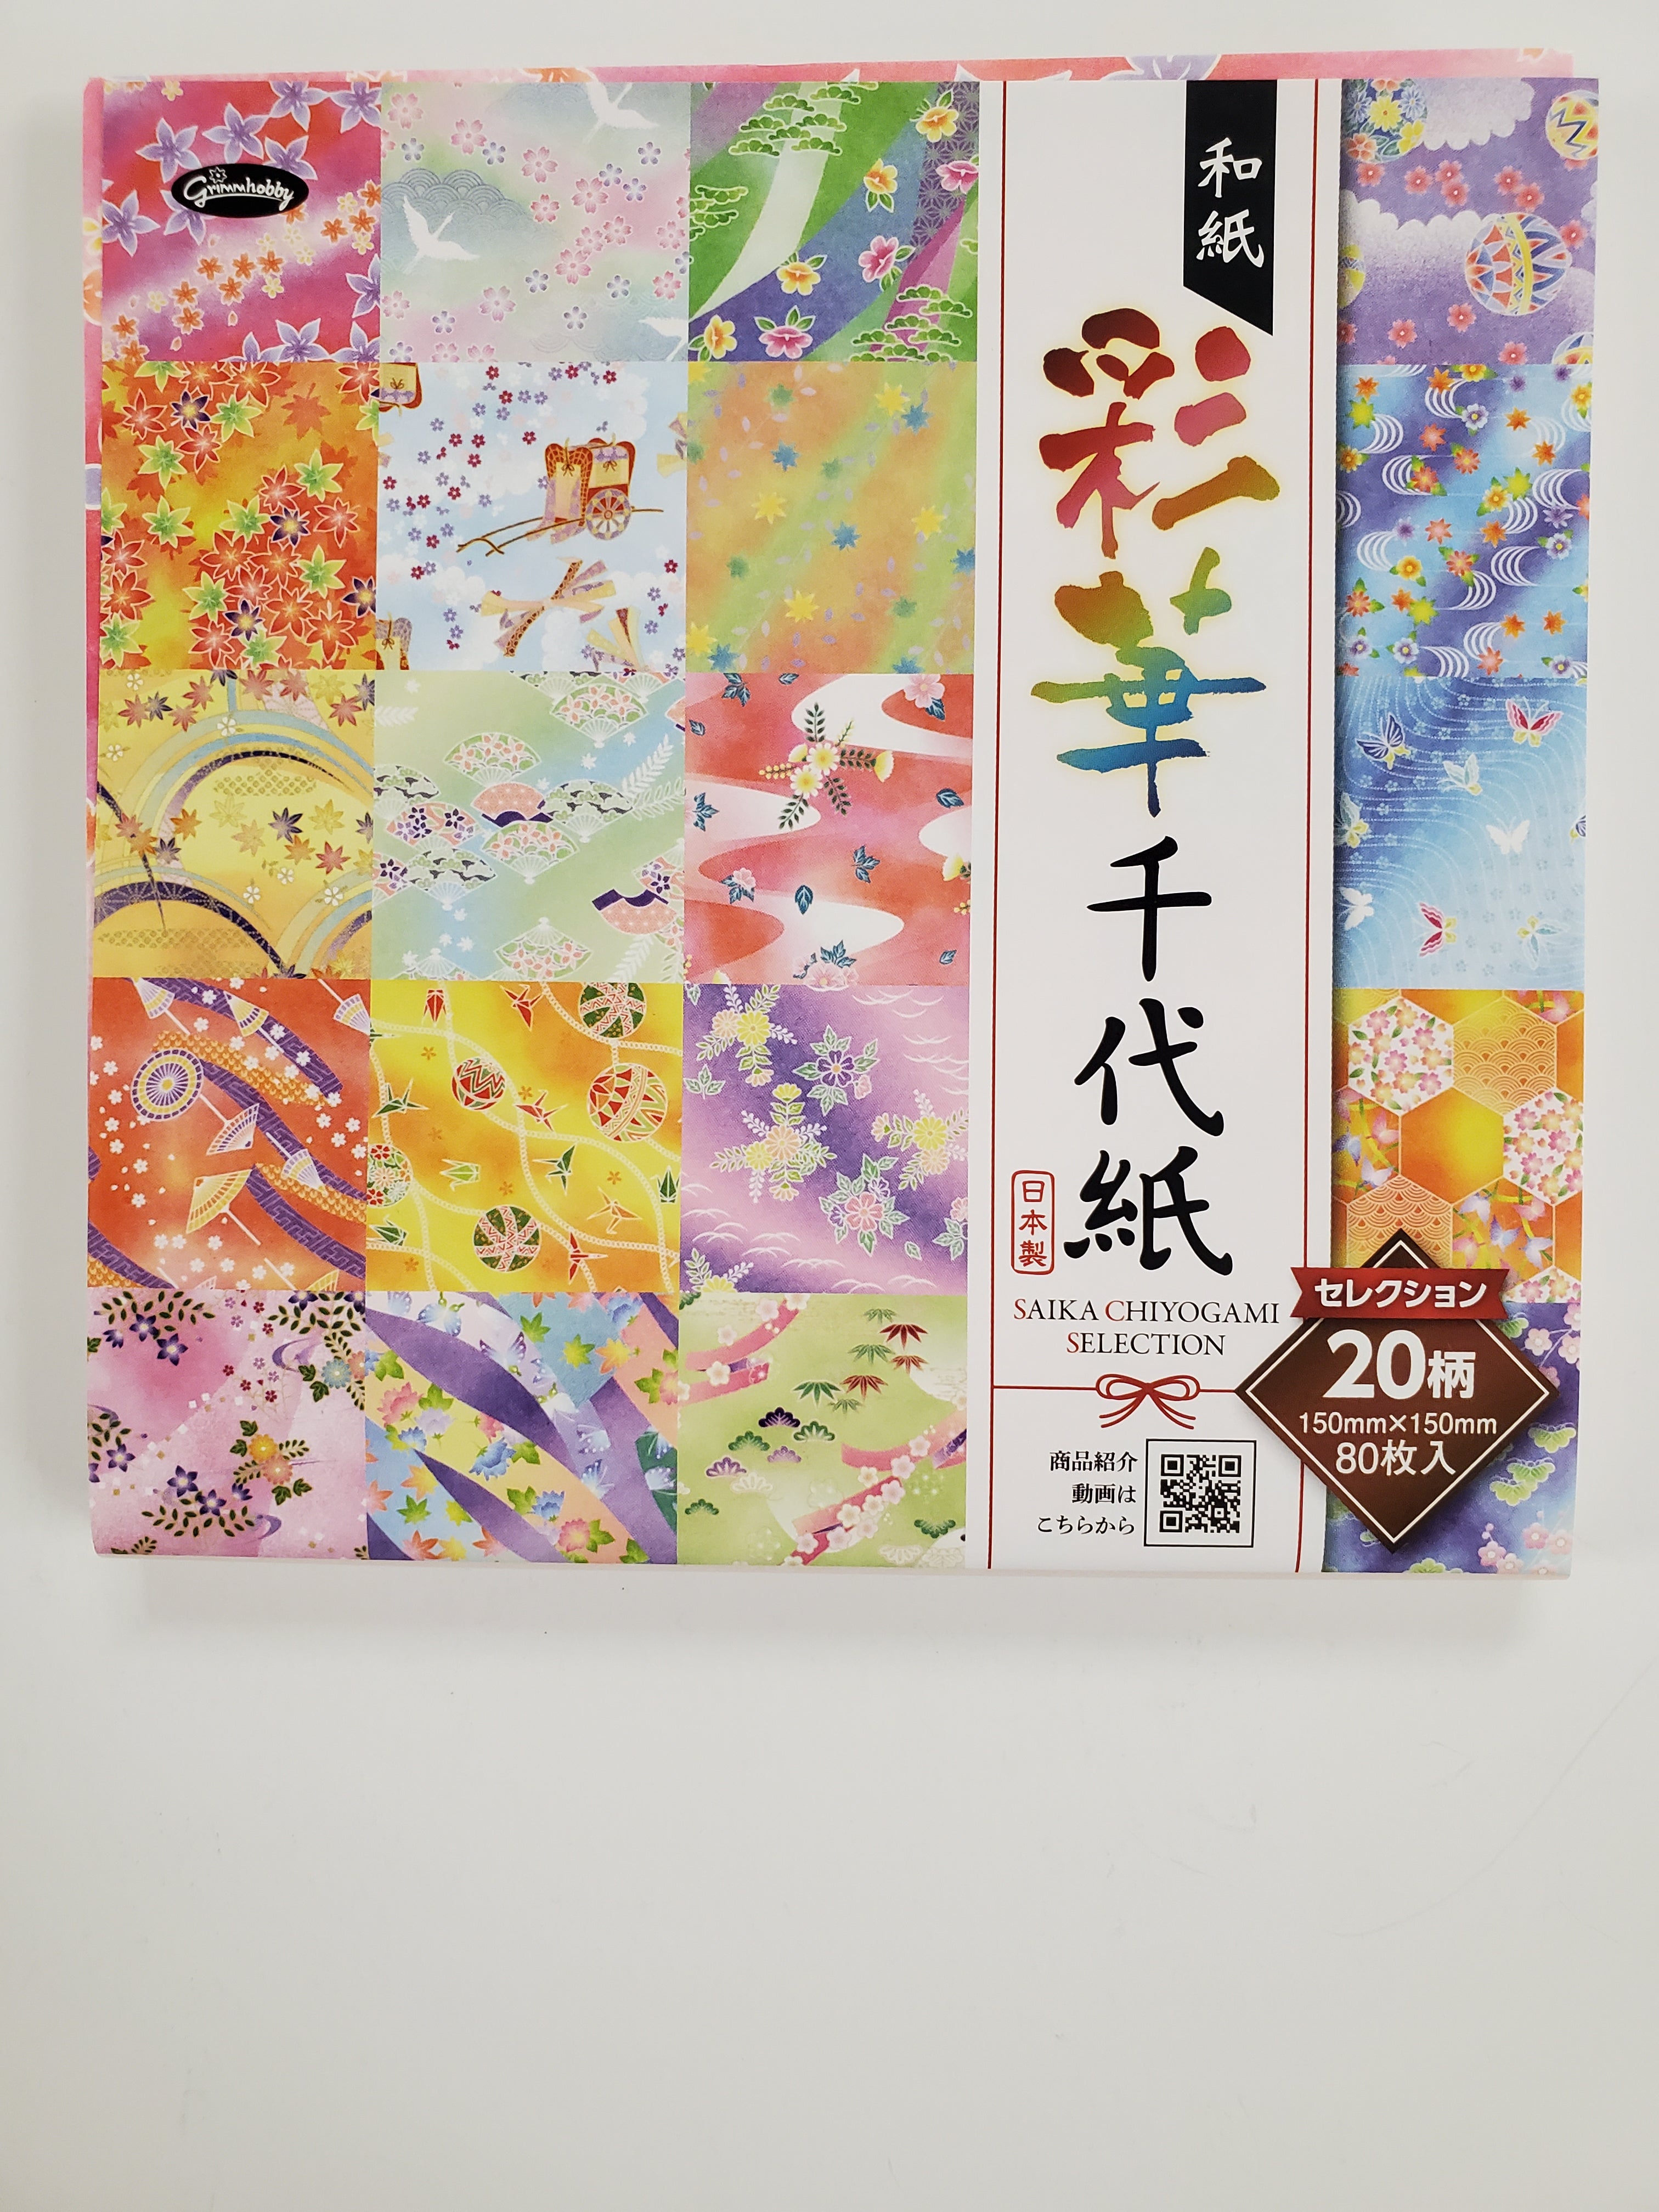 Four Seasons Saika Chiyogami Selection